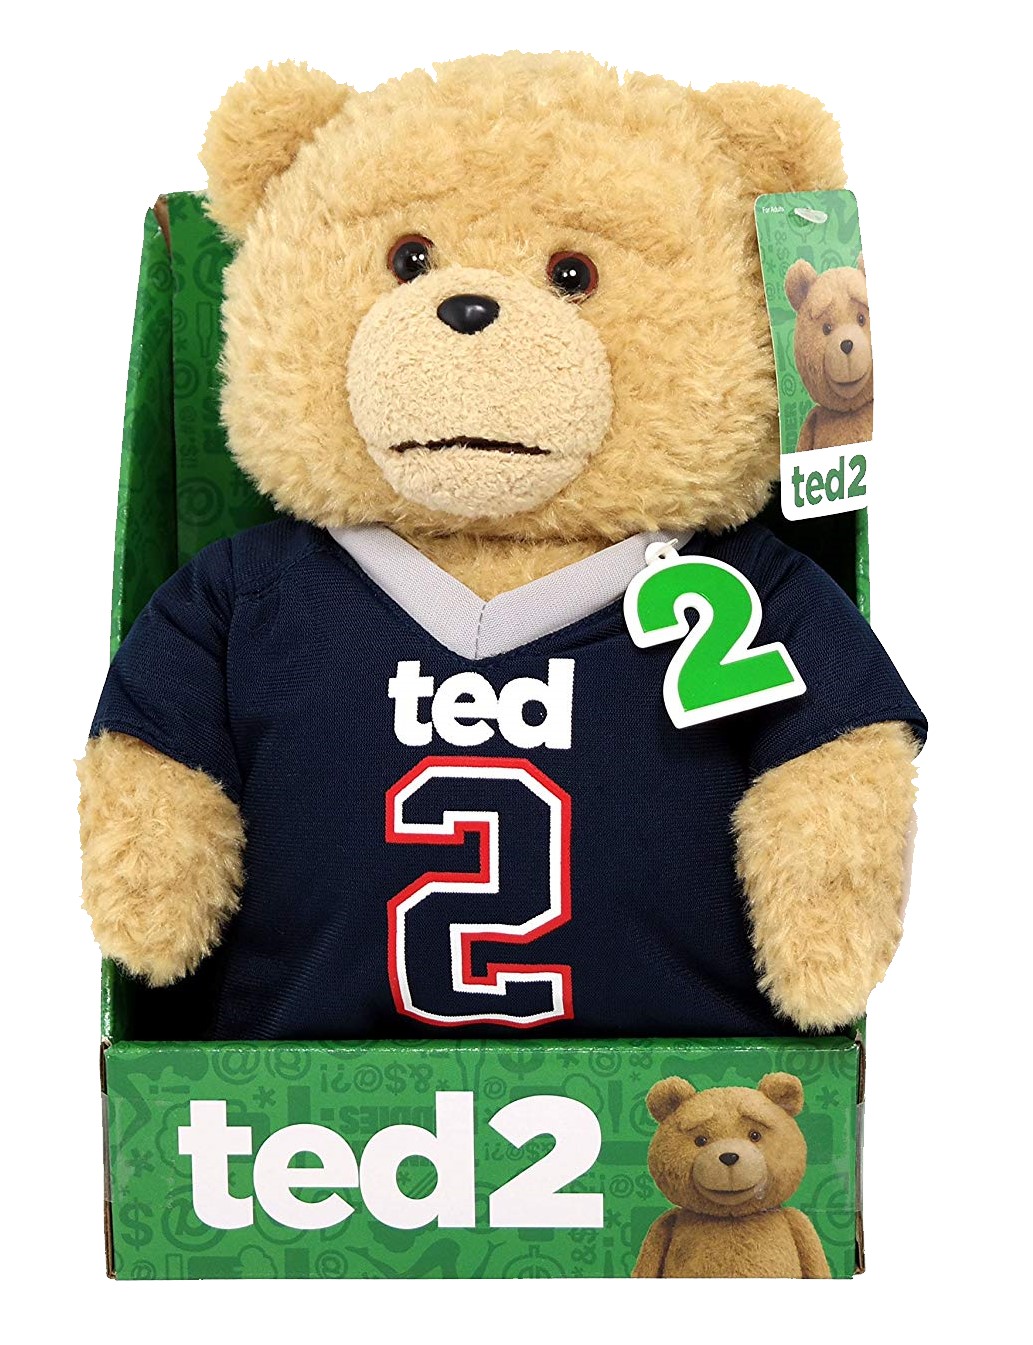 Ted 2 Ted sprechender Plüschbär mit Football-Oberteil